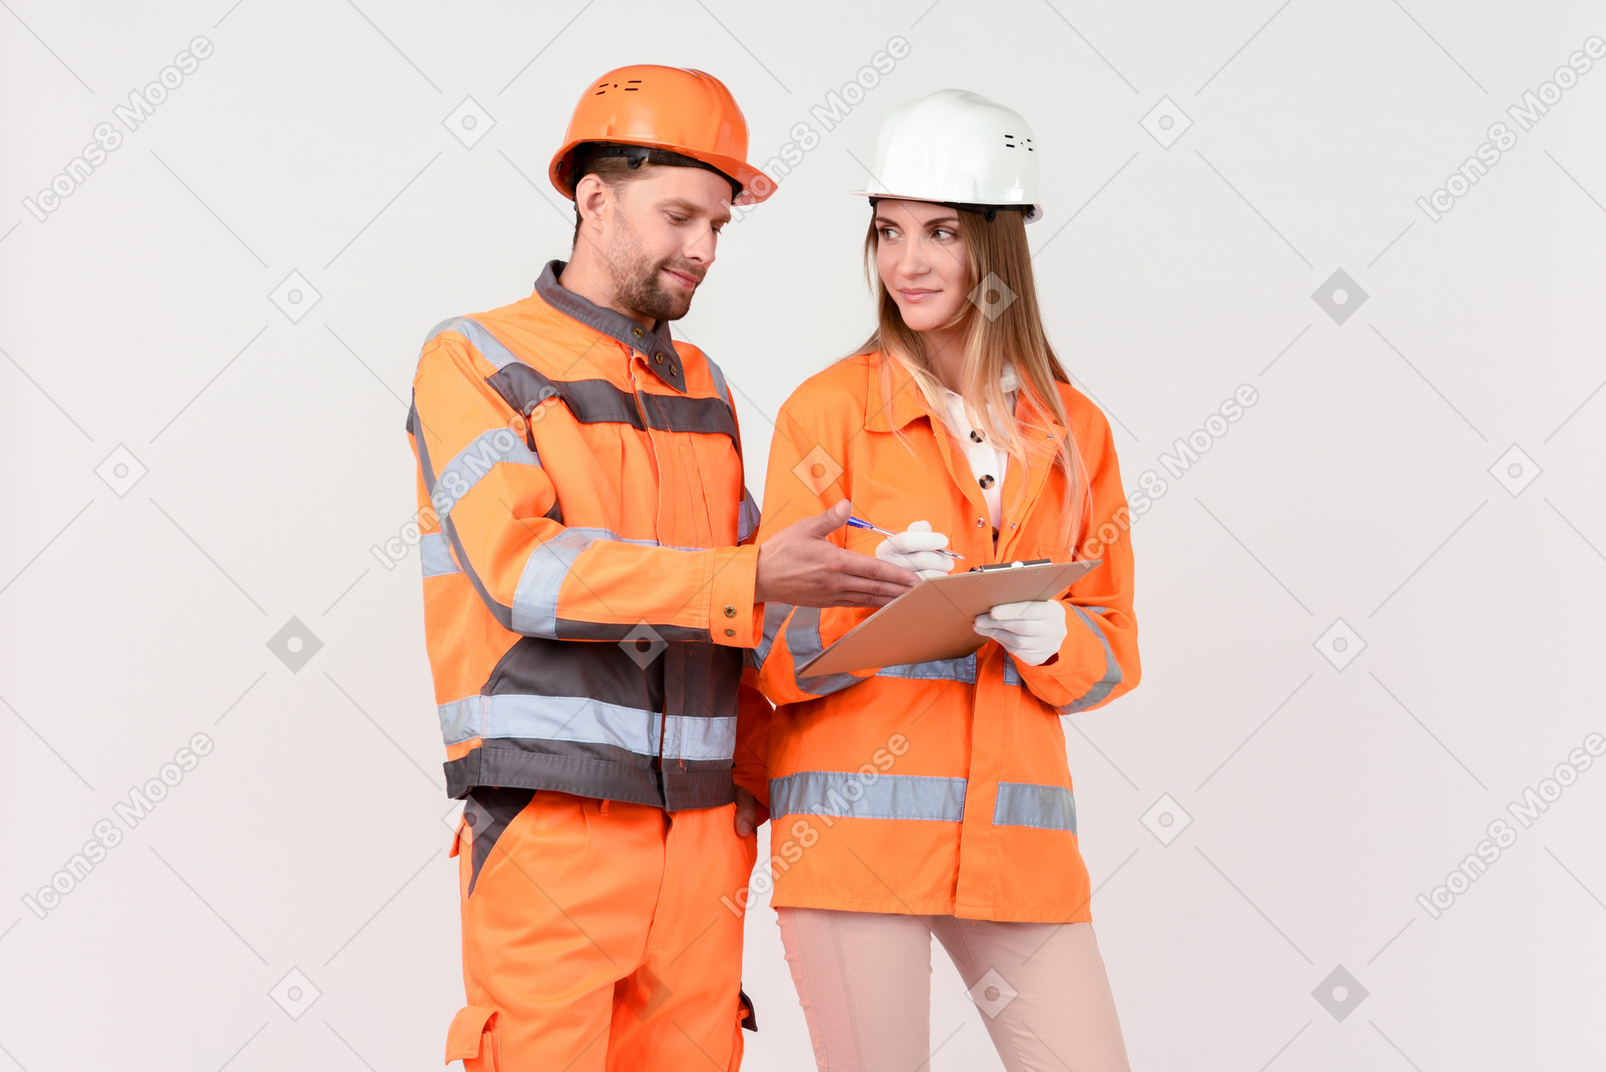 男性和女性工人正在讨论某事